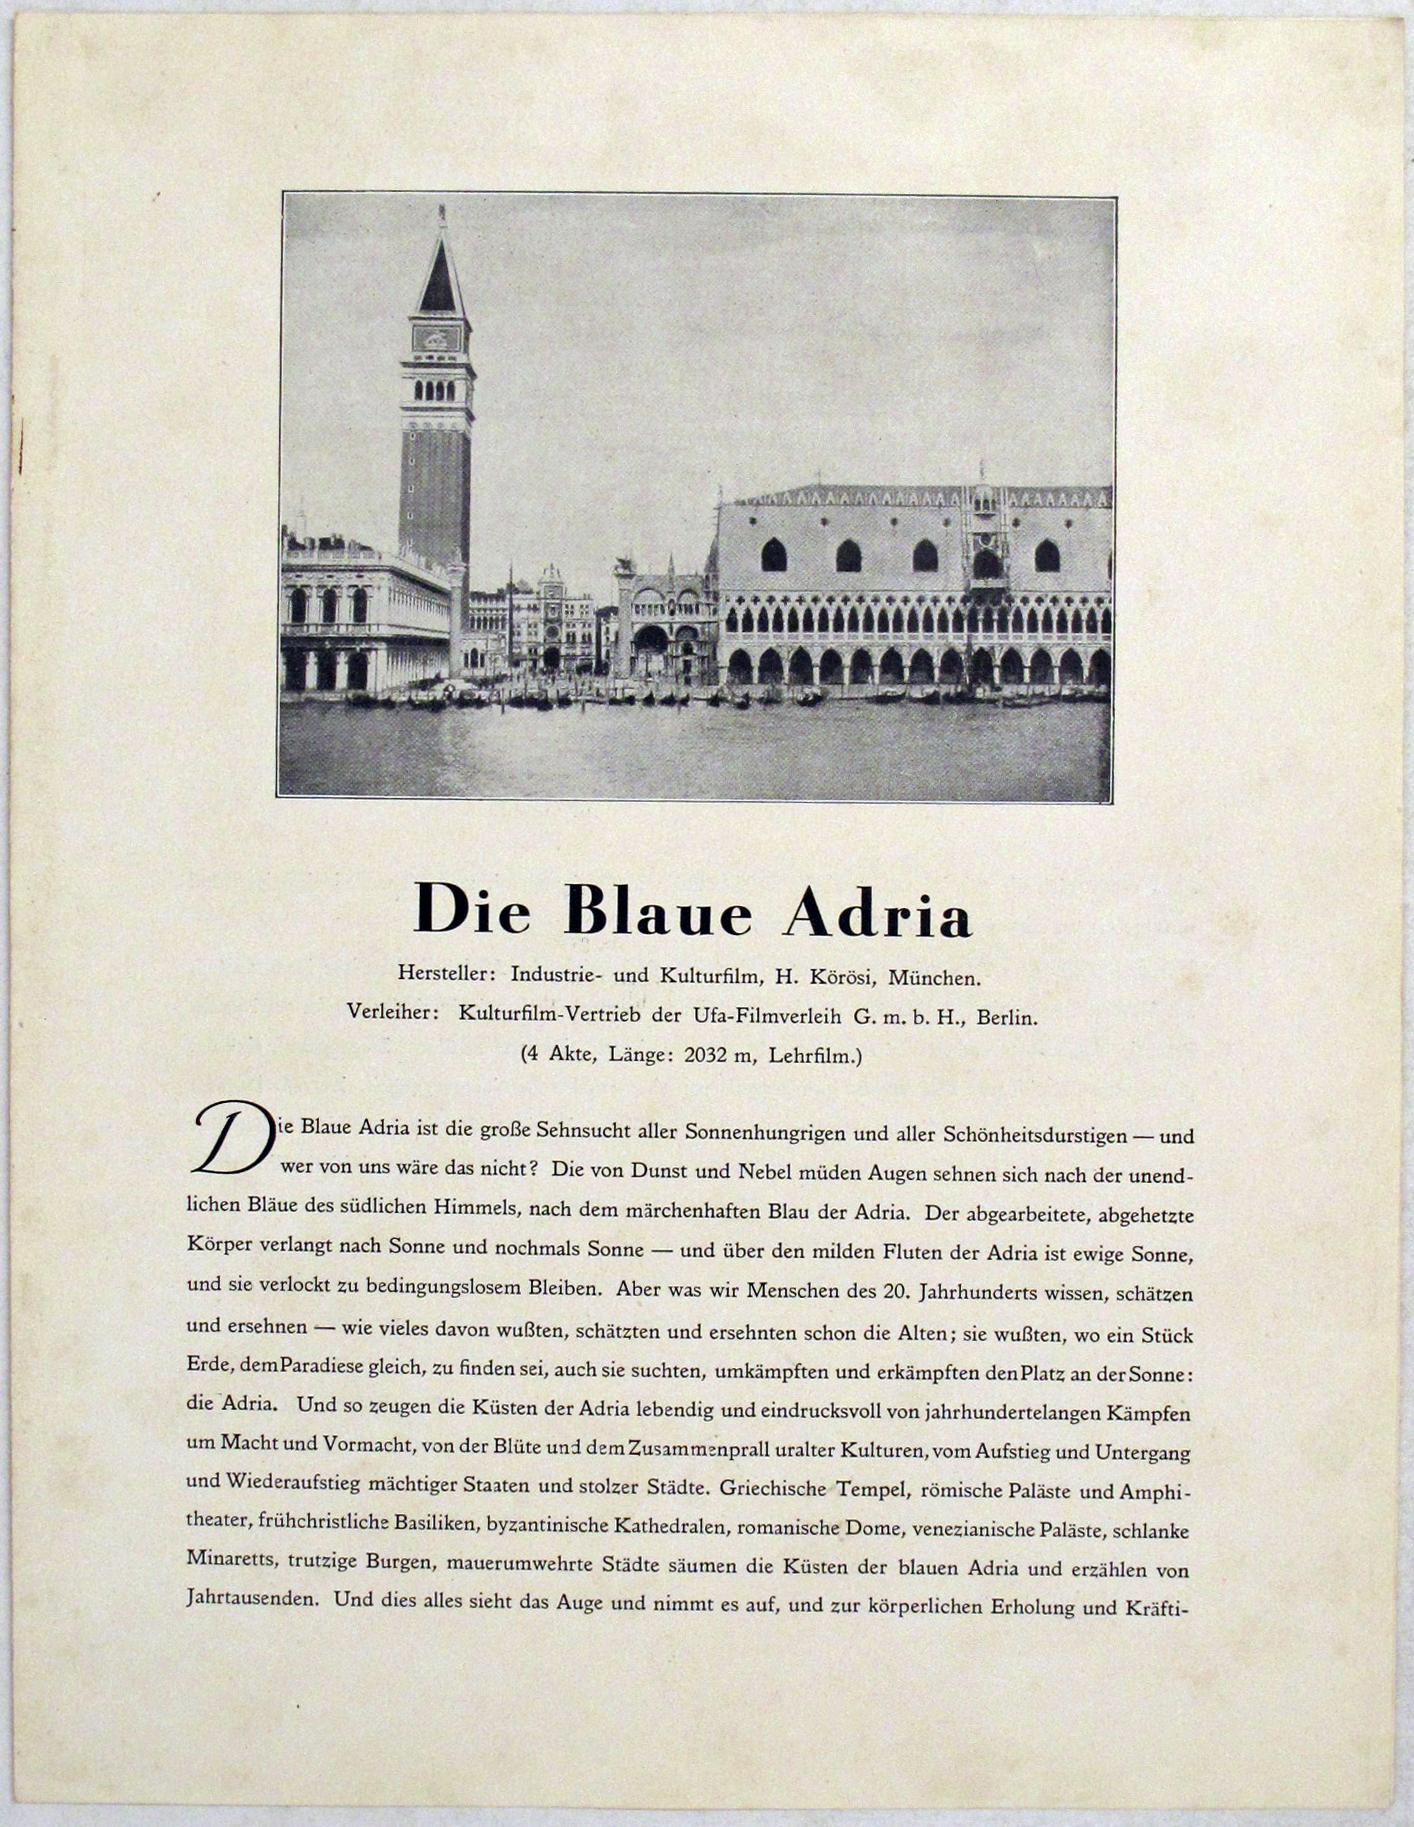 Programm zum Film "Die blaue Adria", 1930